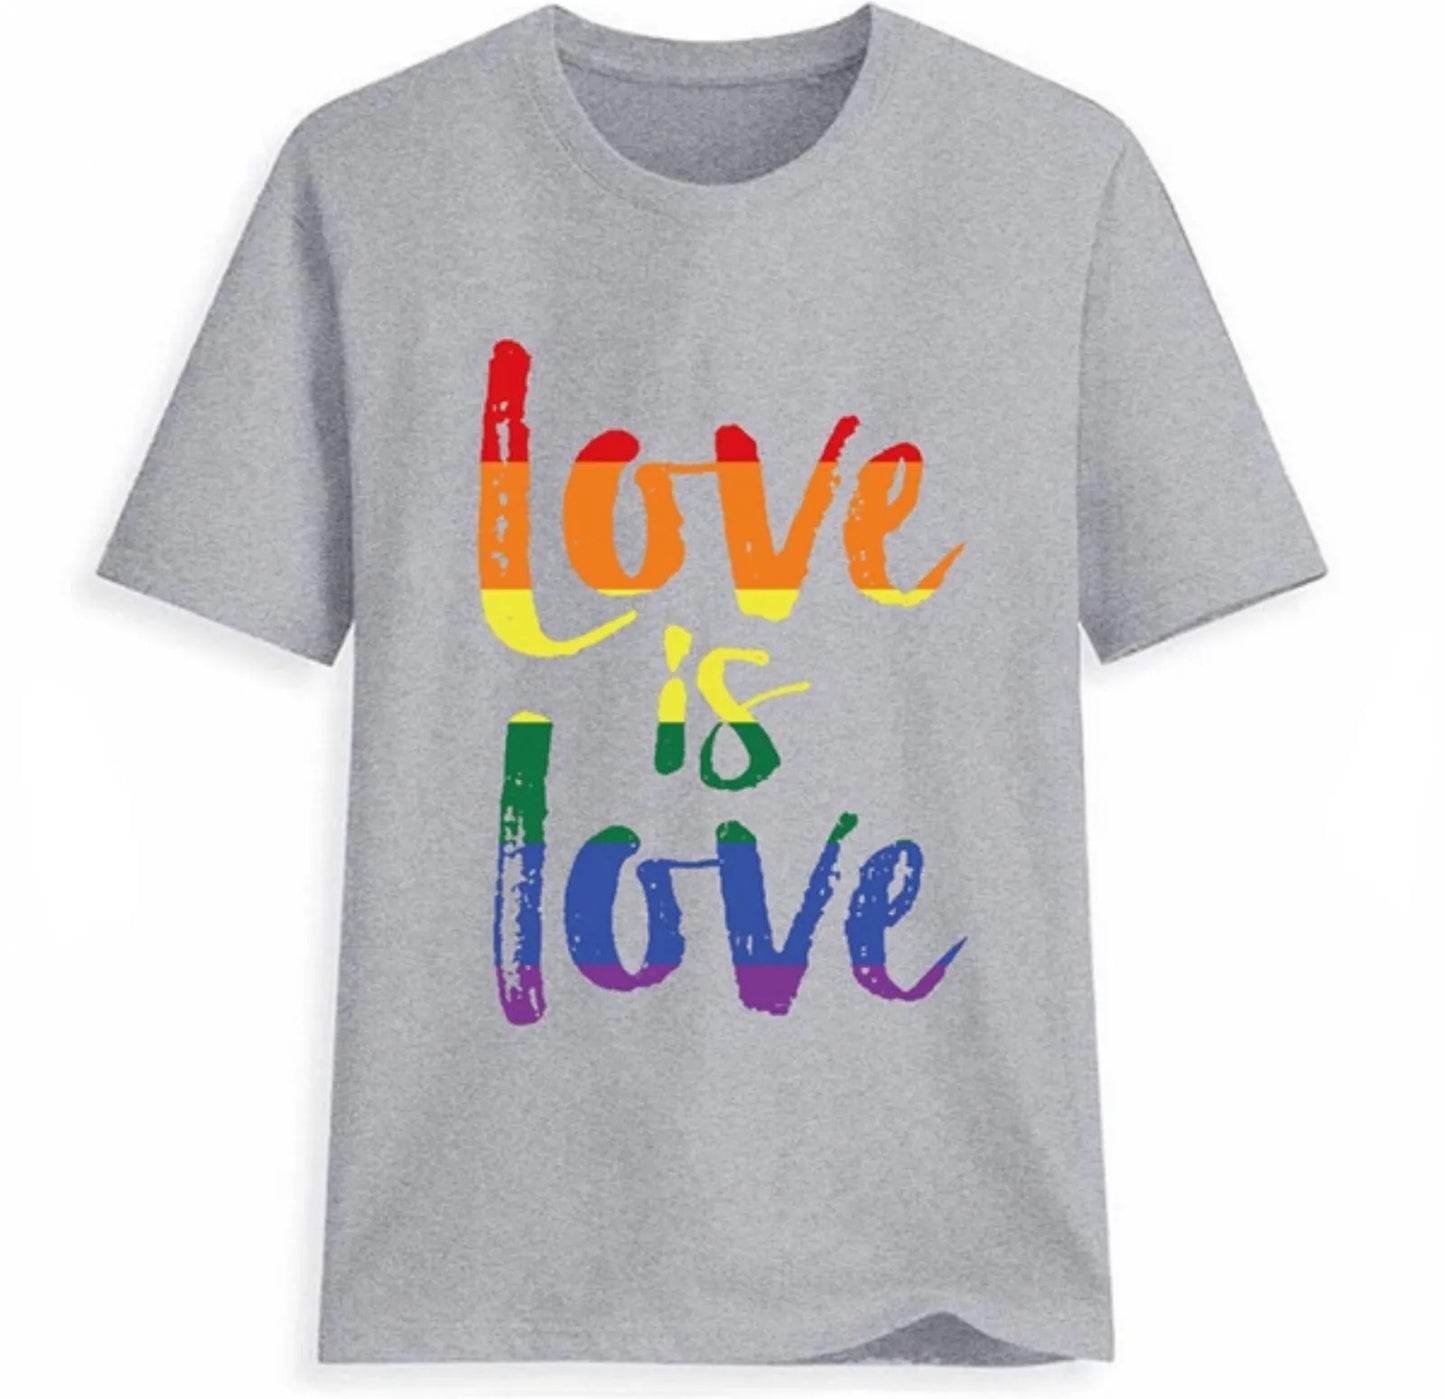 Love is love T-Shirt Grau Unisex